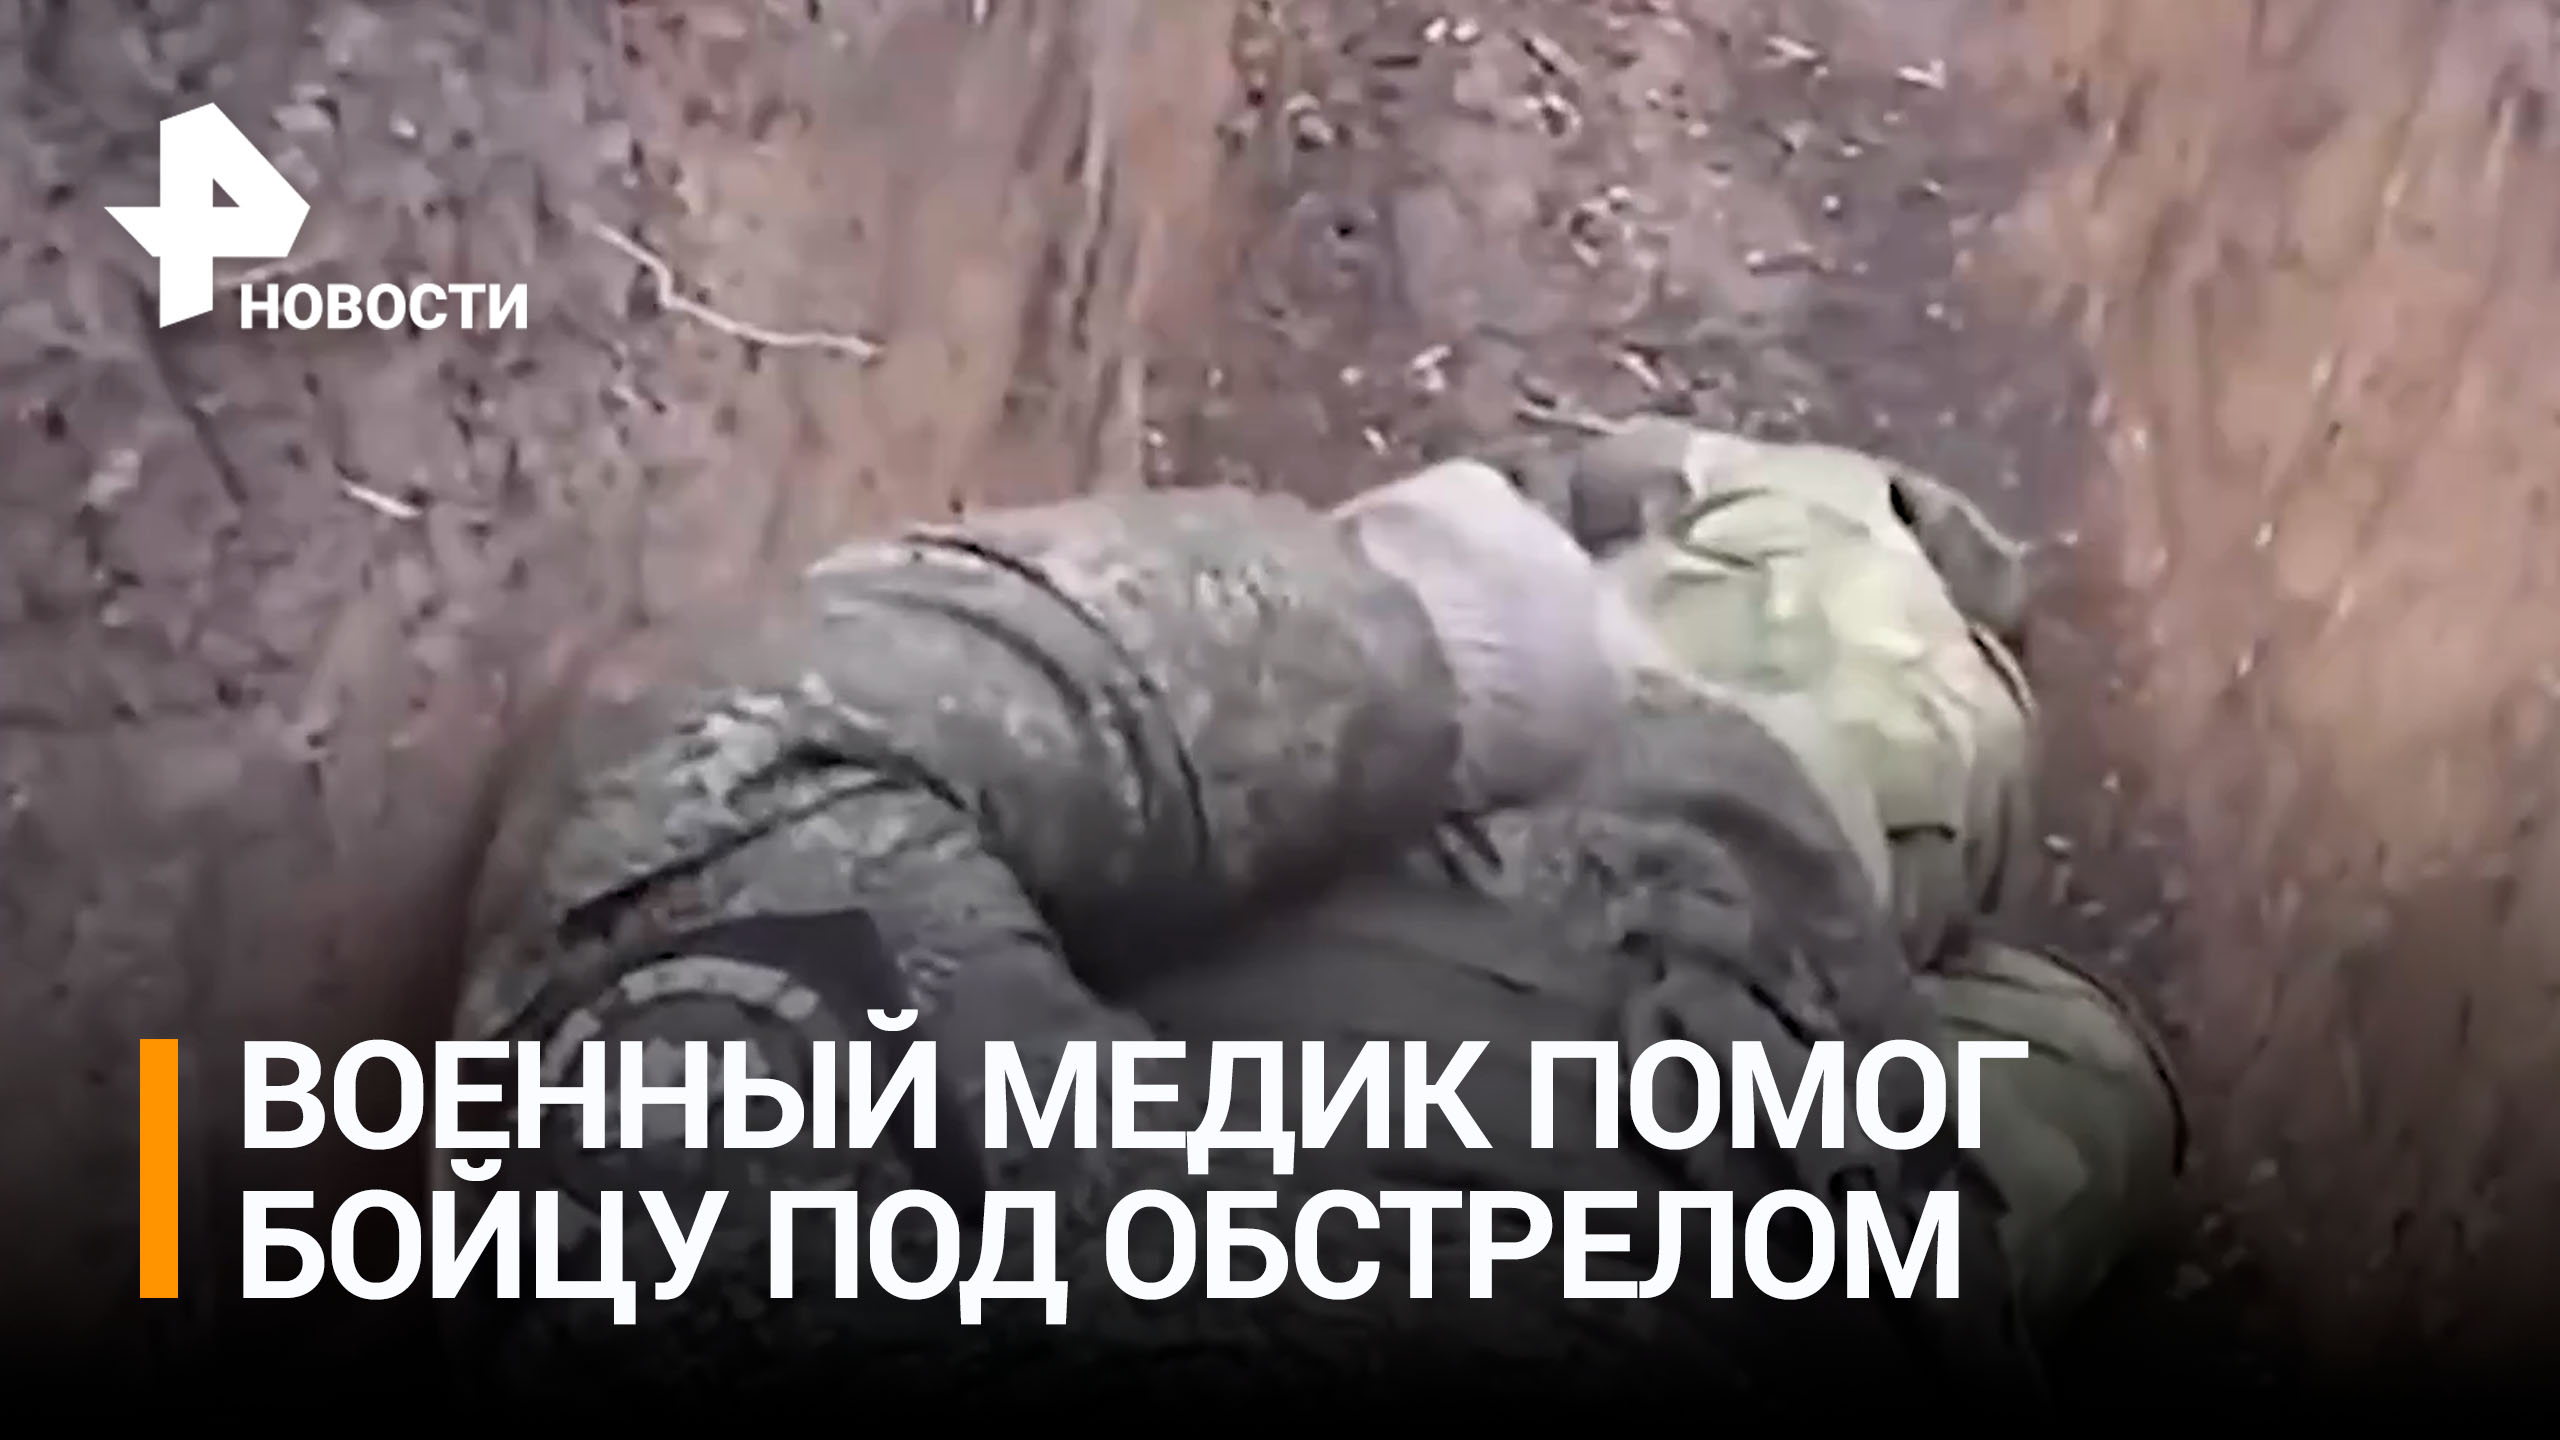 Попавший под обстрел военный медик помог раненому российскому бойцу / РЕН Новости